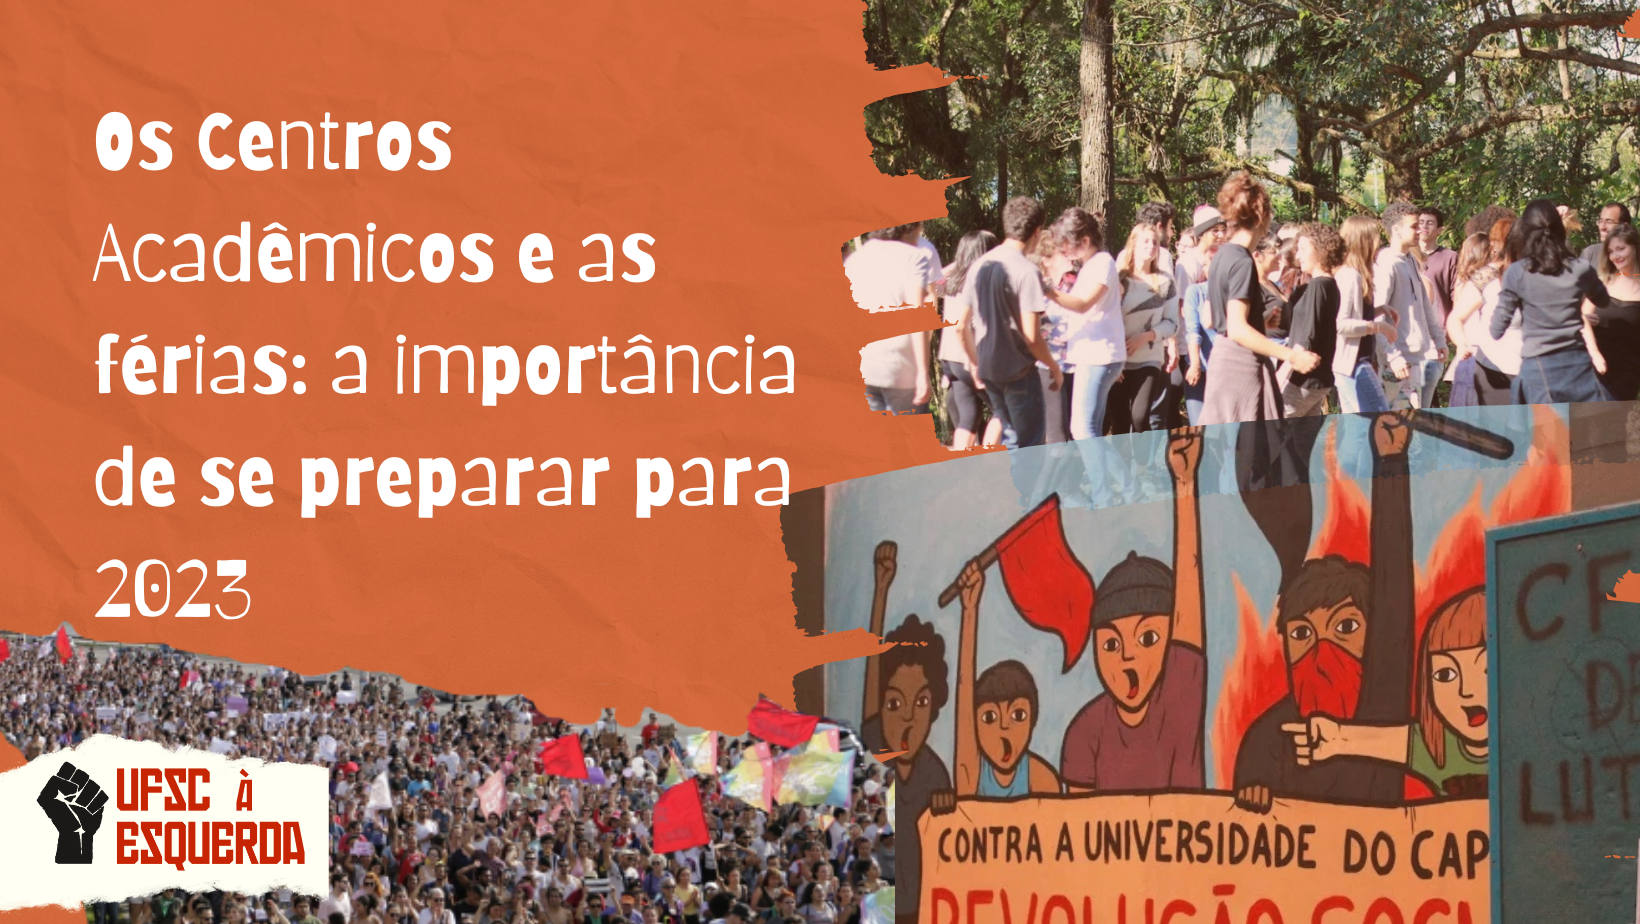 Montagem UFSC à Esquerda com fotos por UFSC À Esquerda, CALPsi e Cláudia Reis/Notícias UFSC.